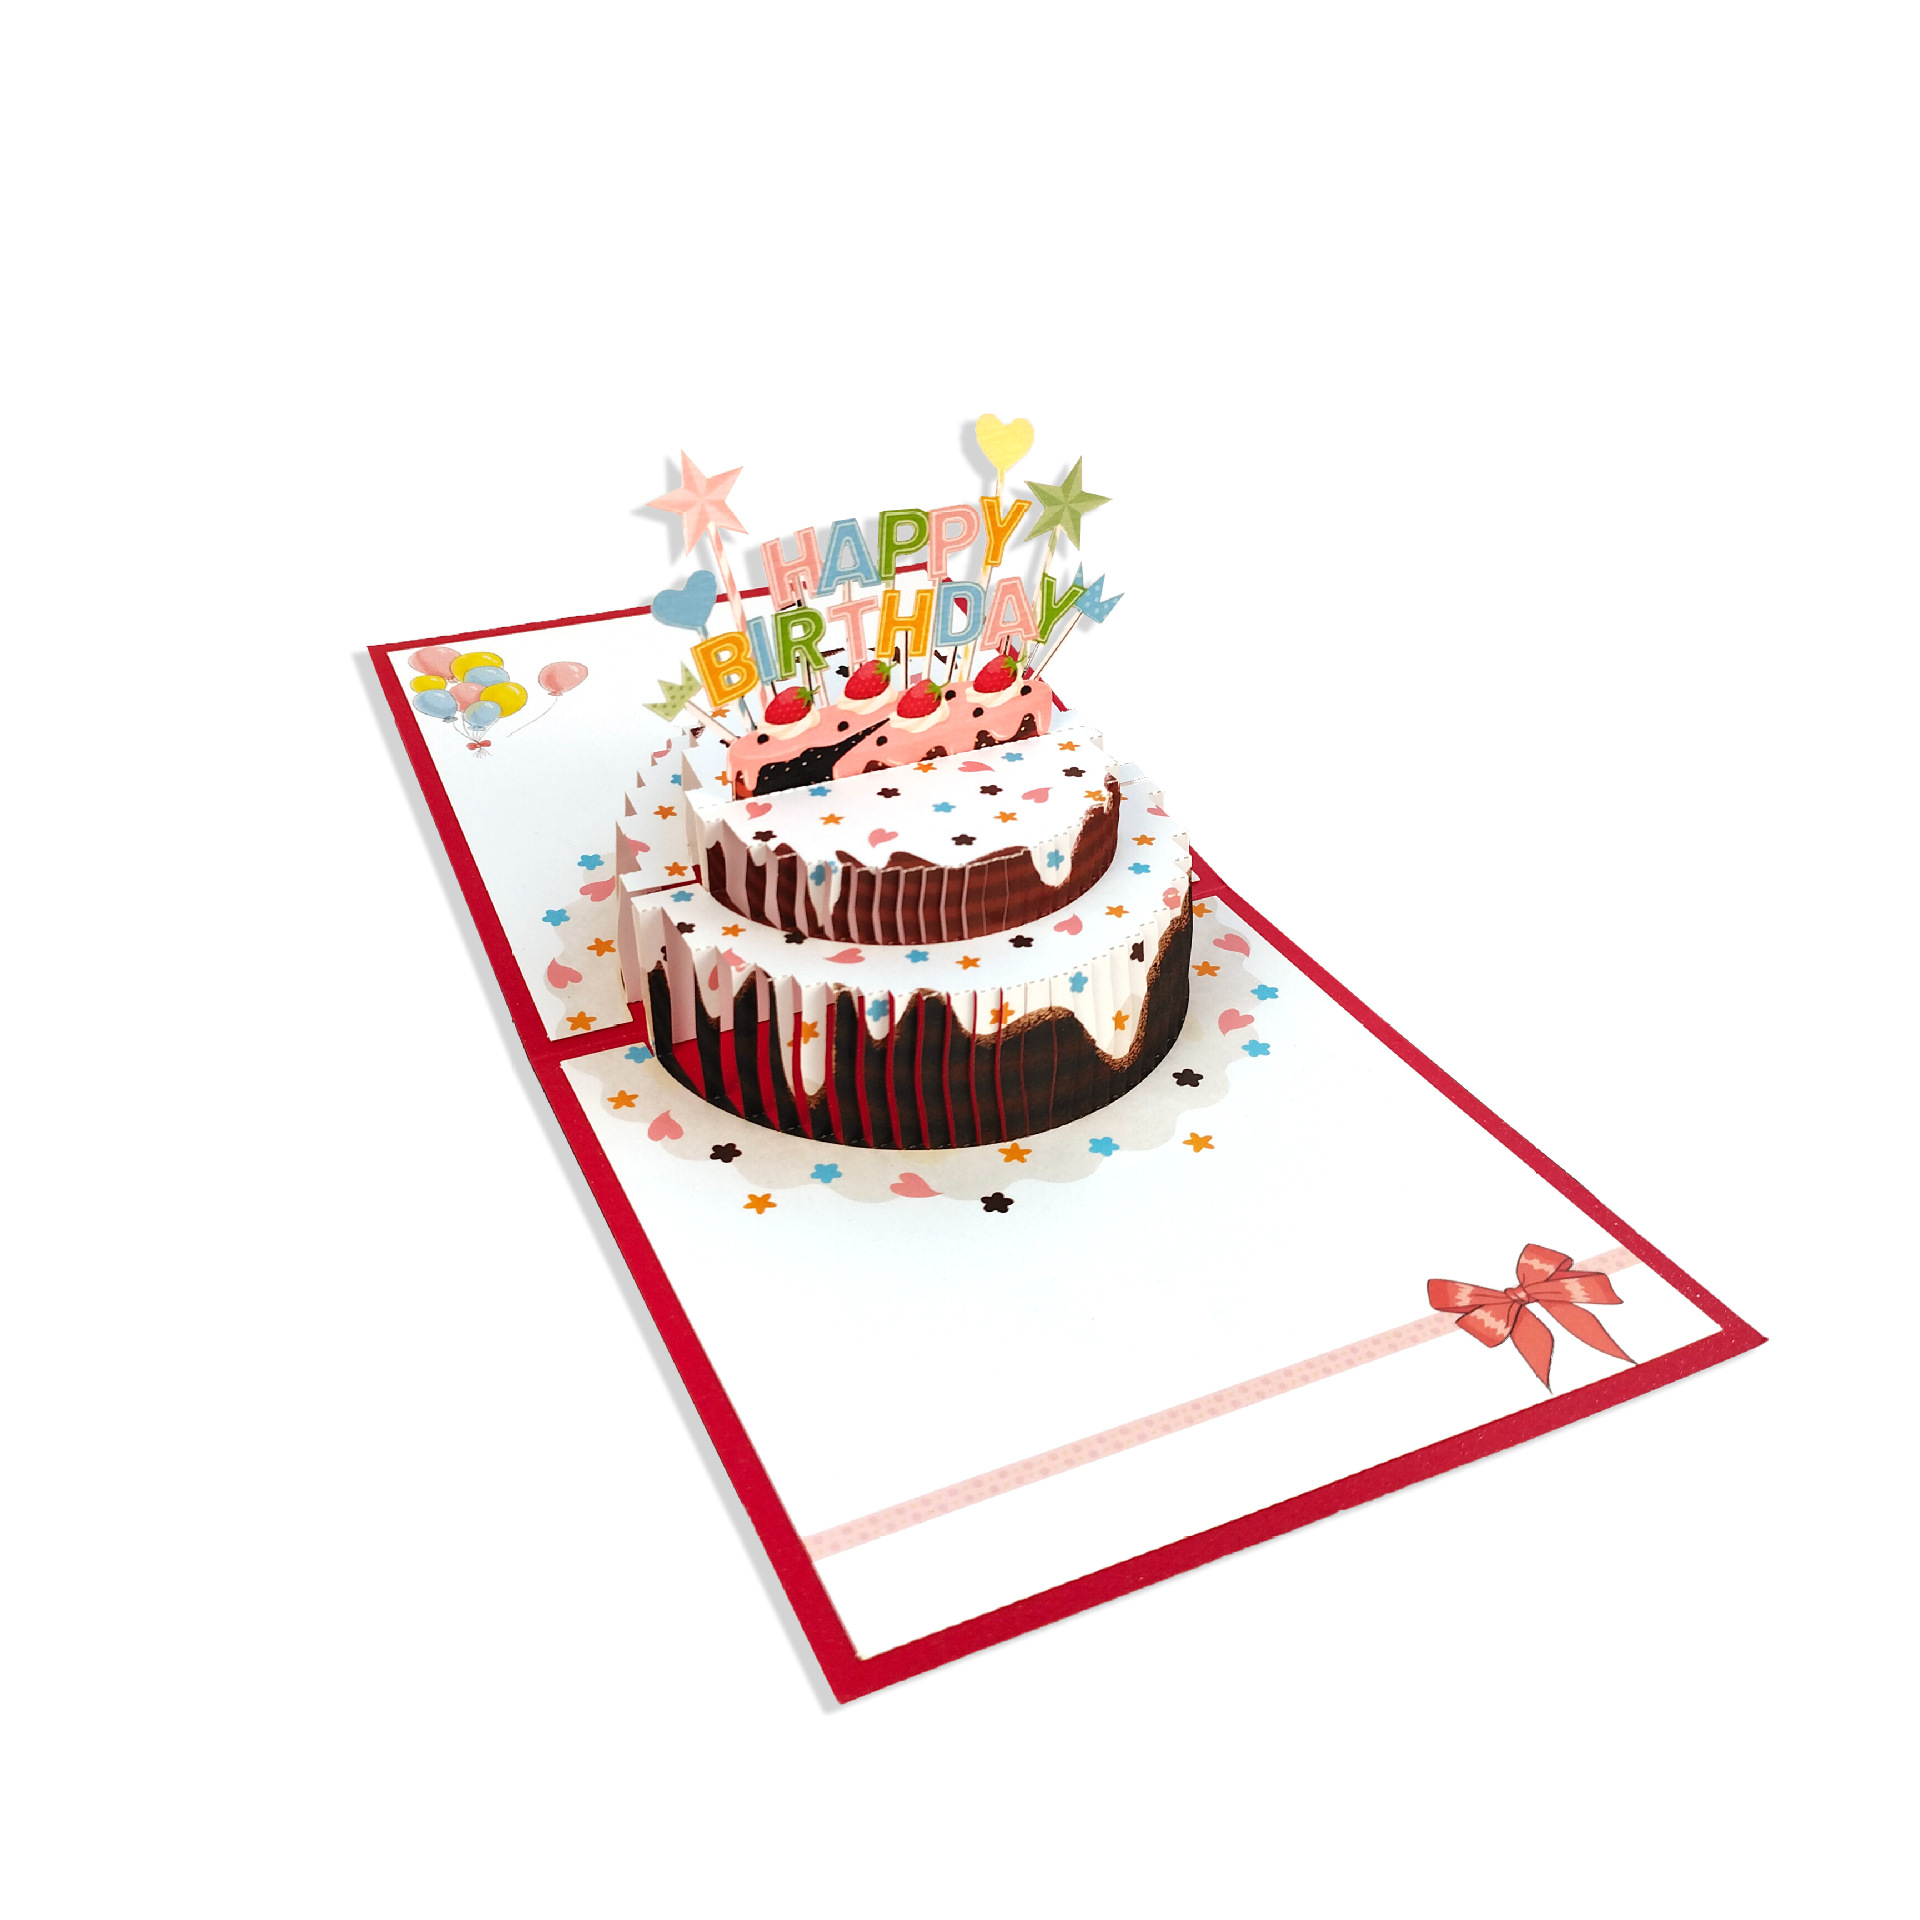 3D贺卡欧式时尚立体生日卡 邀请函 祝福卡 烫金镂空激光珠光纸卡